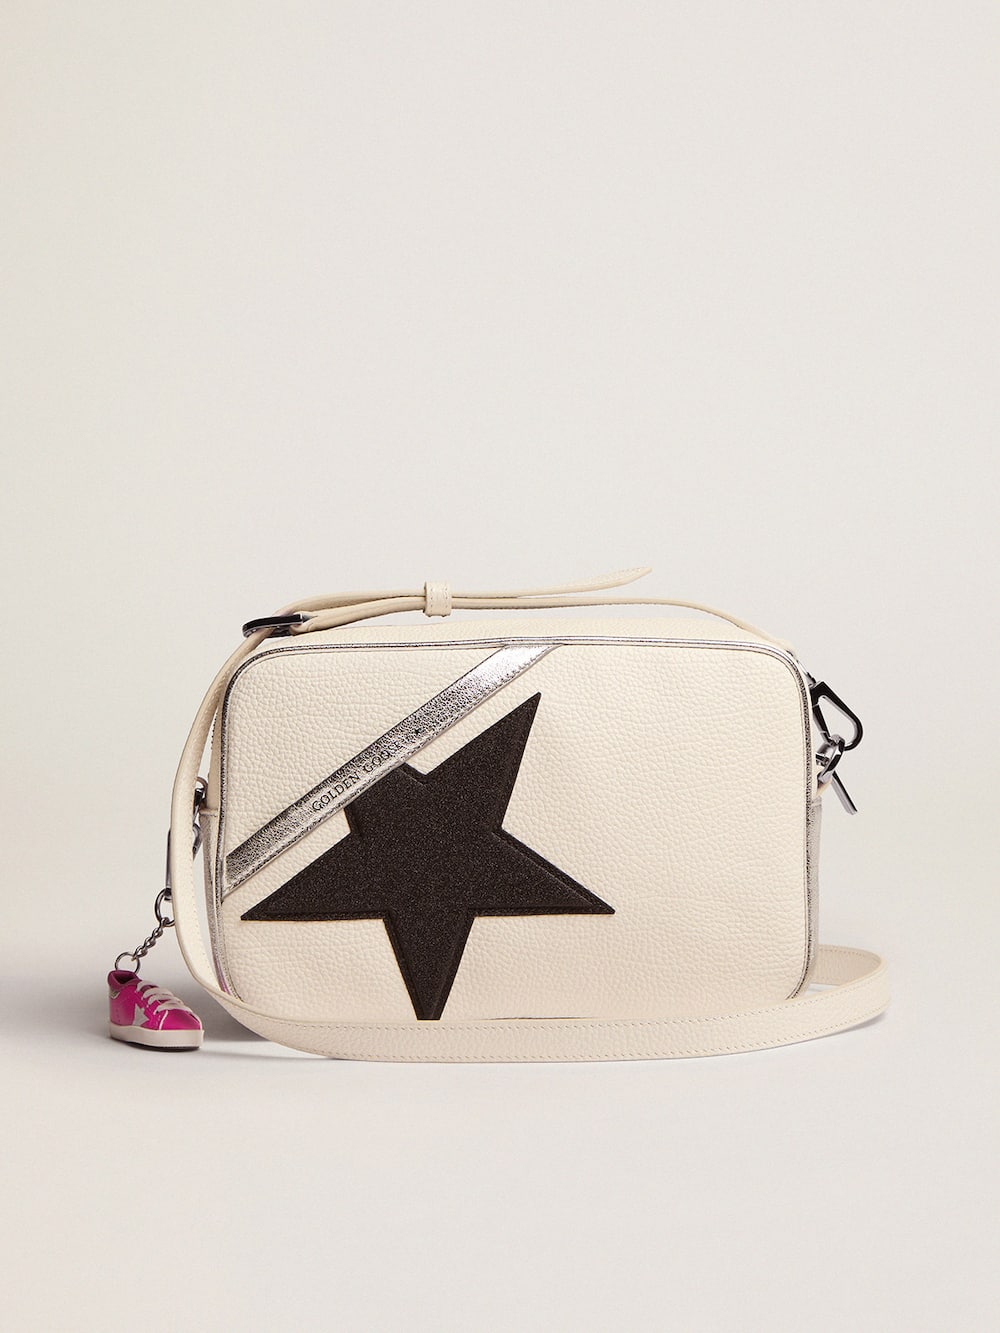 Golden Goose - Weiße Star Bag aus gewalktem Leder mit Rand in Silber-Metallic und Stern aus schwarzem Glitzer in 